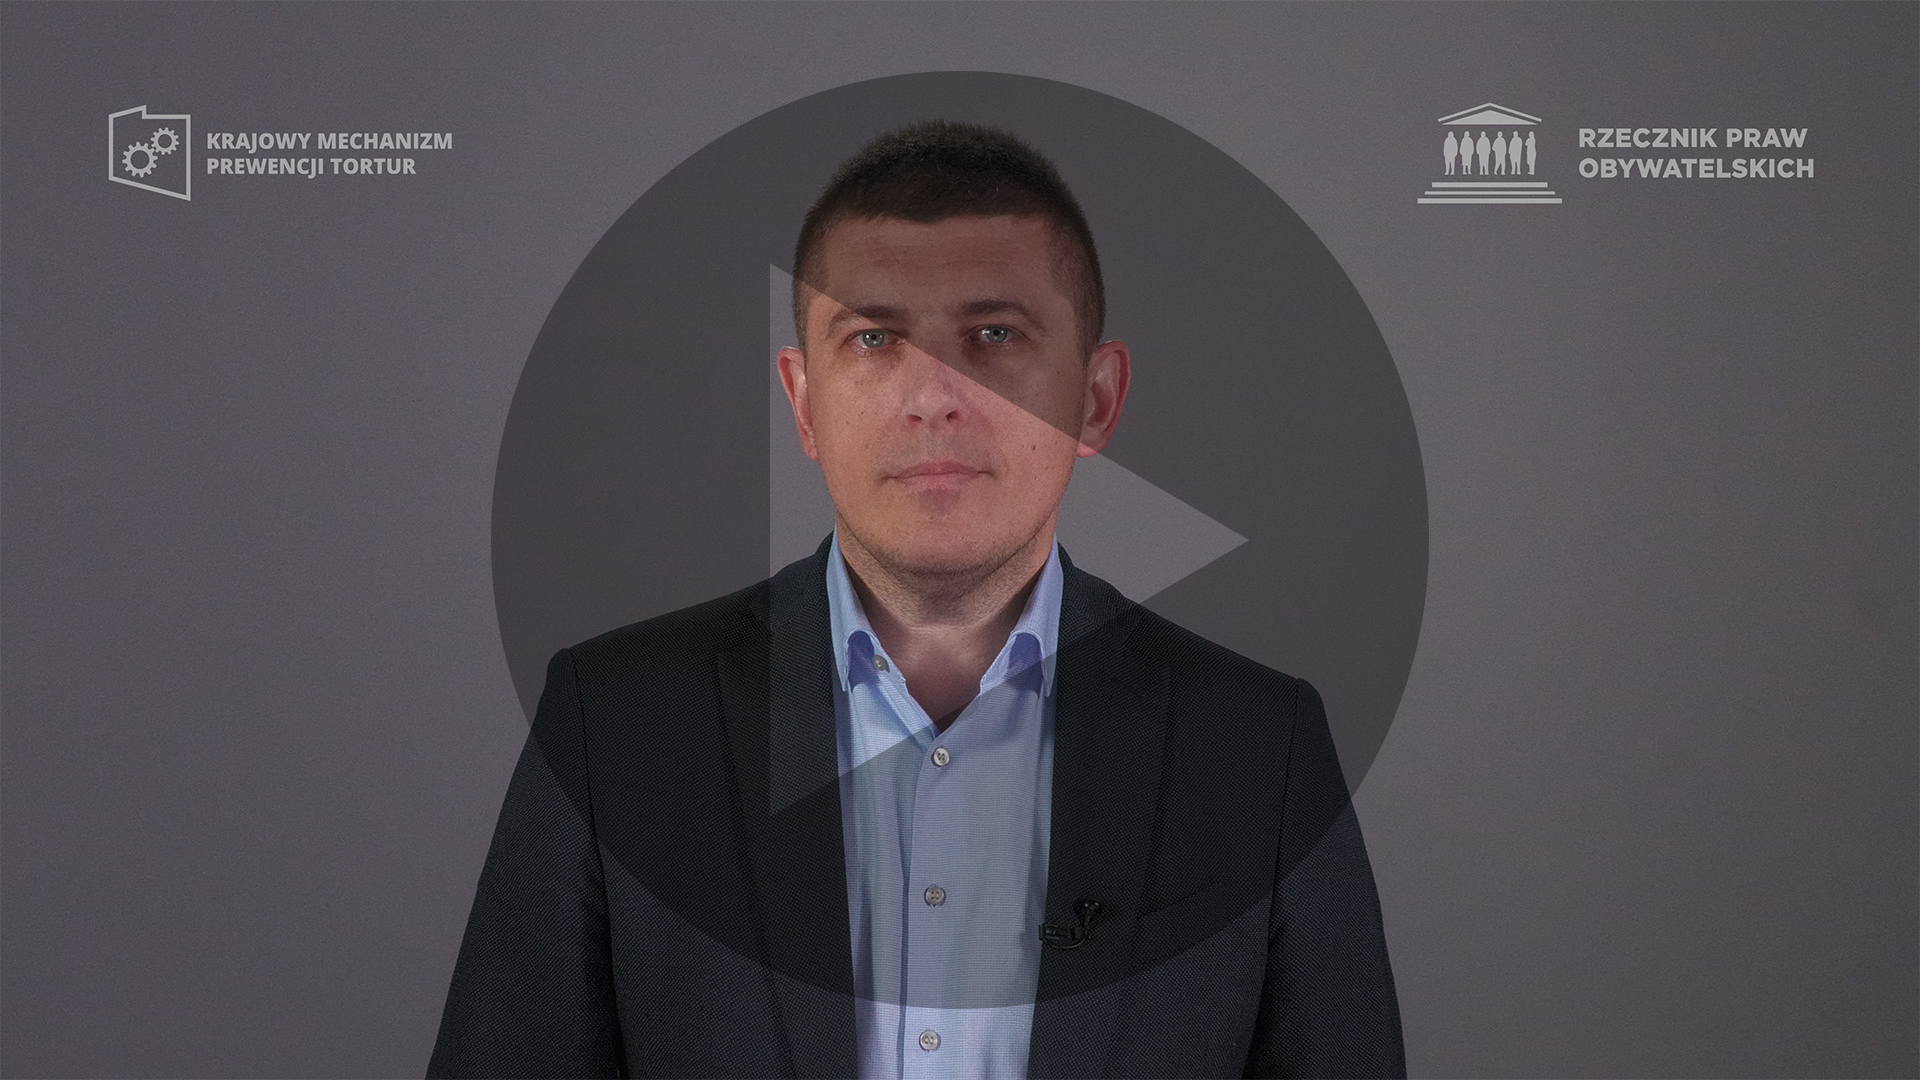 Kadr z nagrania przedstawiający ZRPO Wojciecha Brzozowskiego z naniesionym symbolem odtwarzania wideo - trójkątem w kole